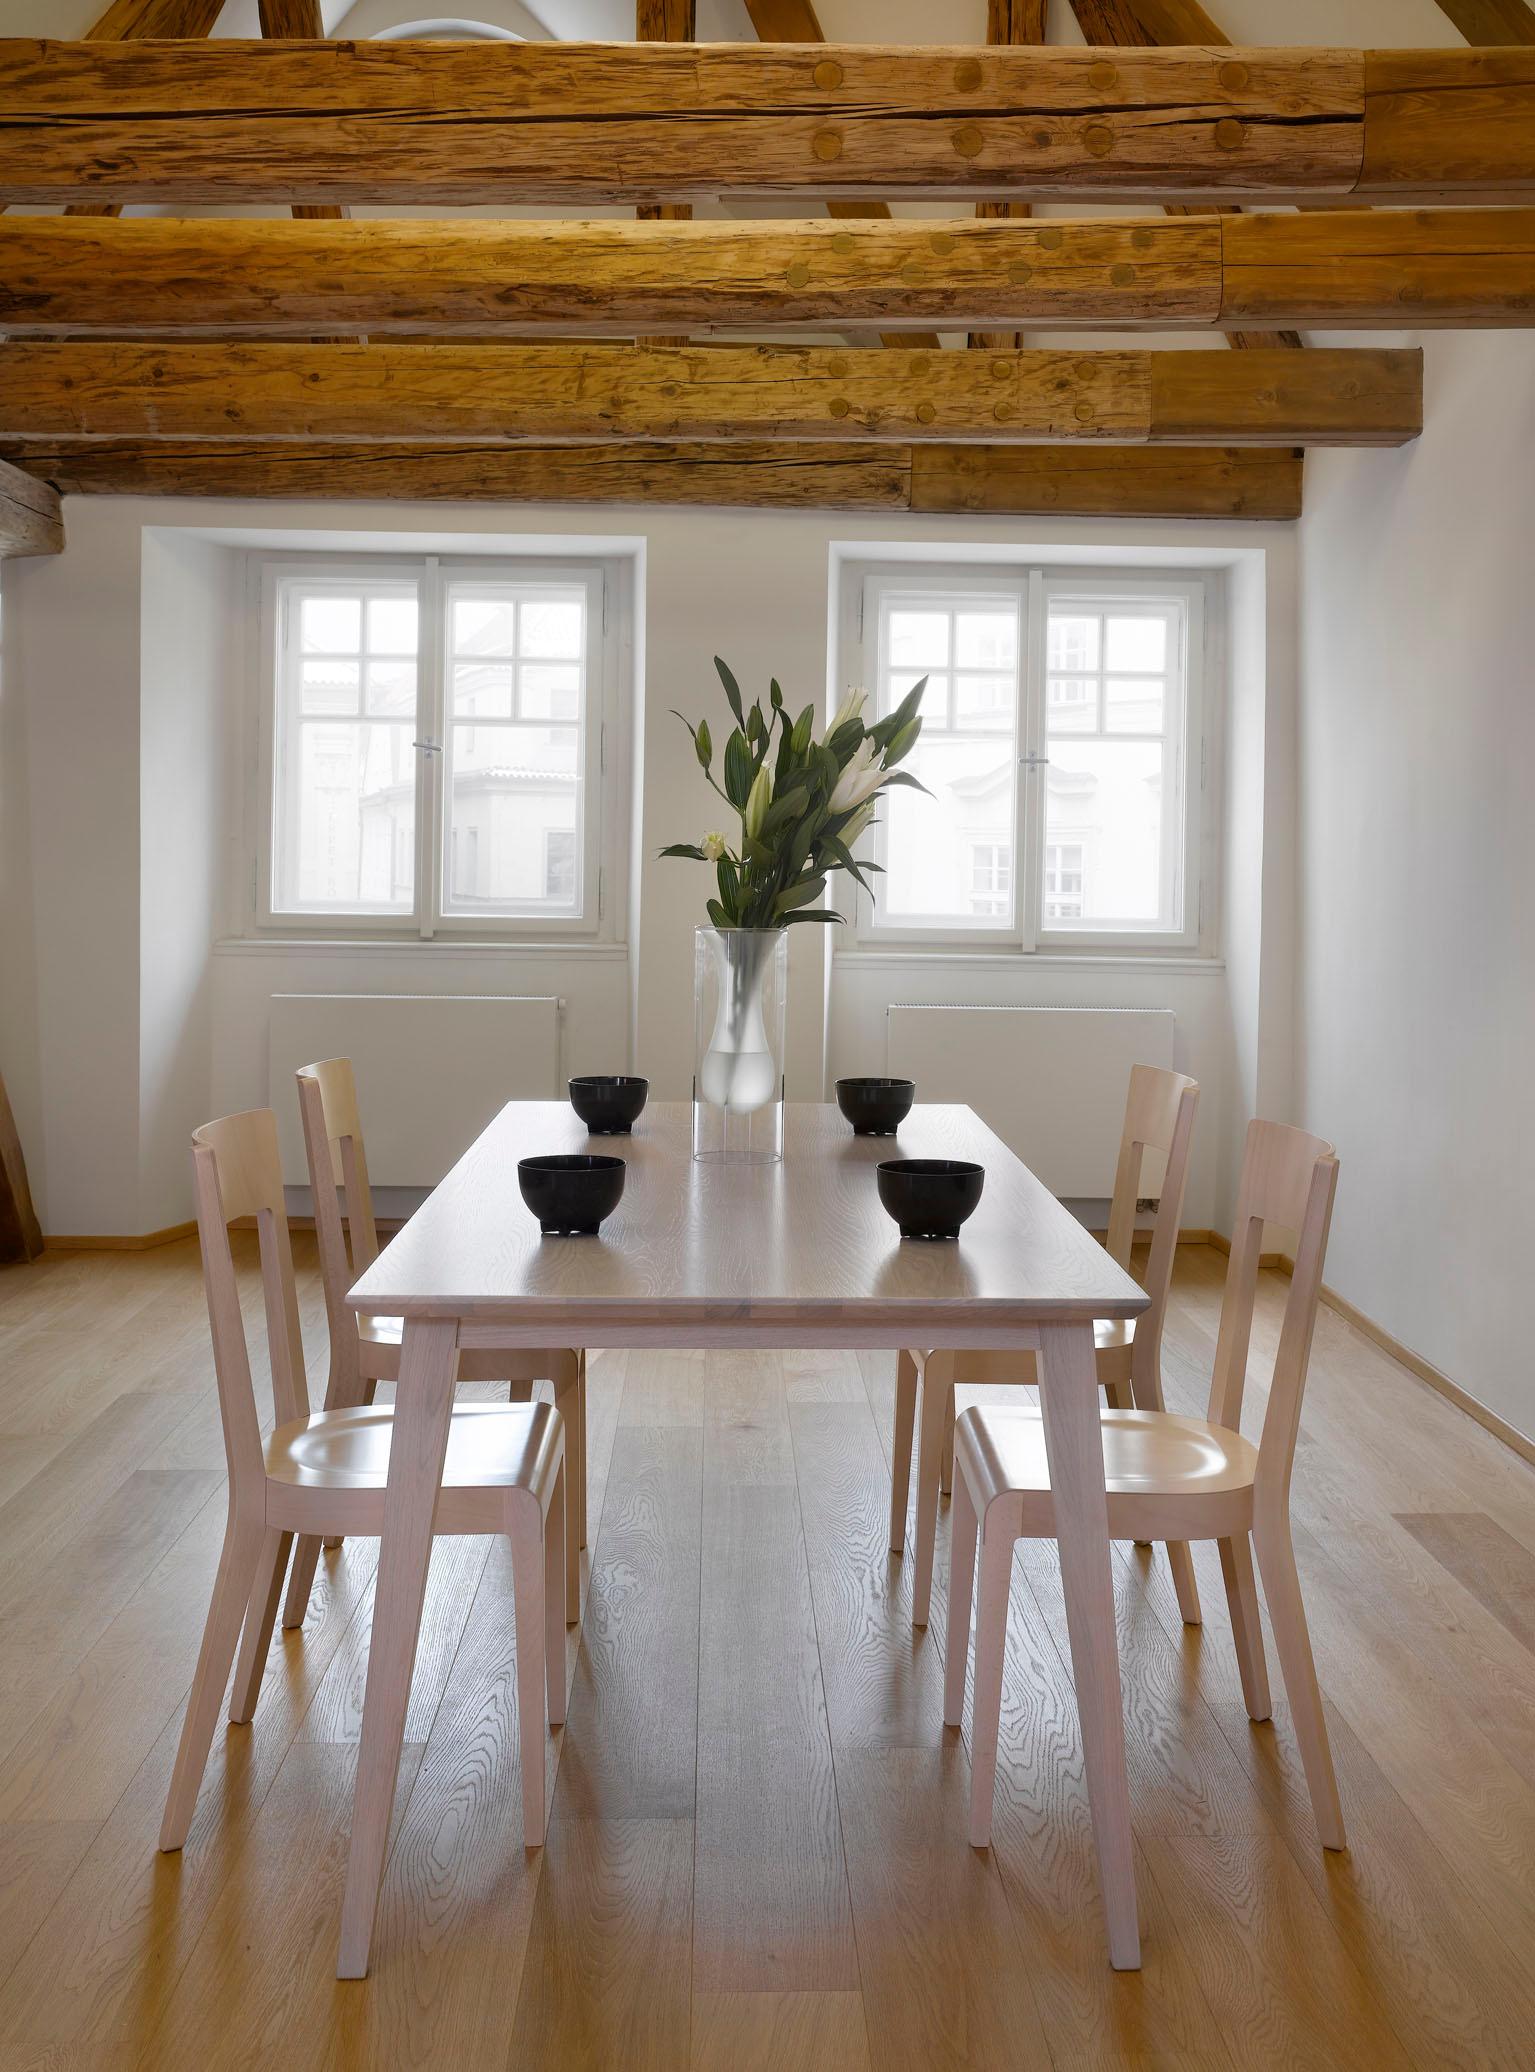 Esstisch und Stühle aus hellem Holz #dachbalken #holzstuhl ©Ton